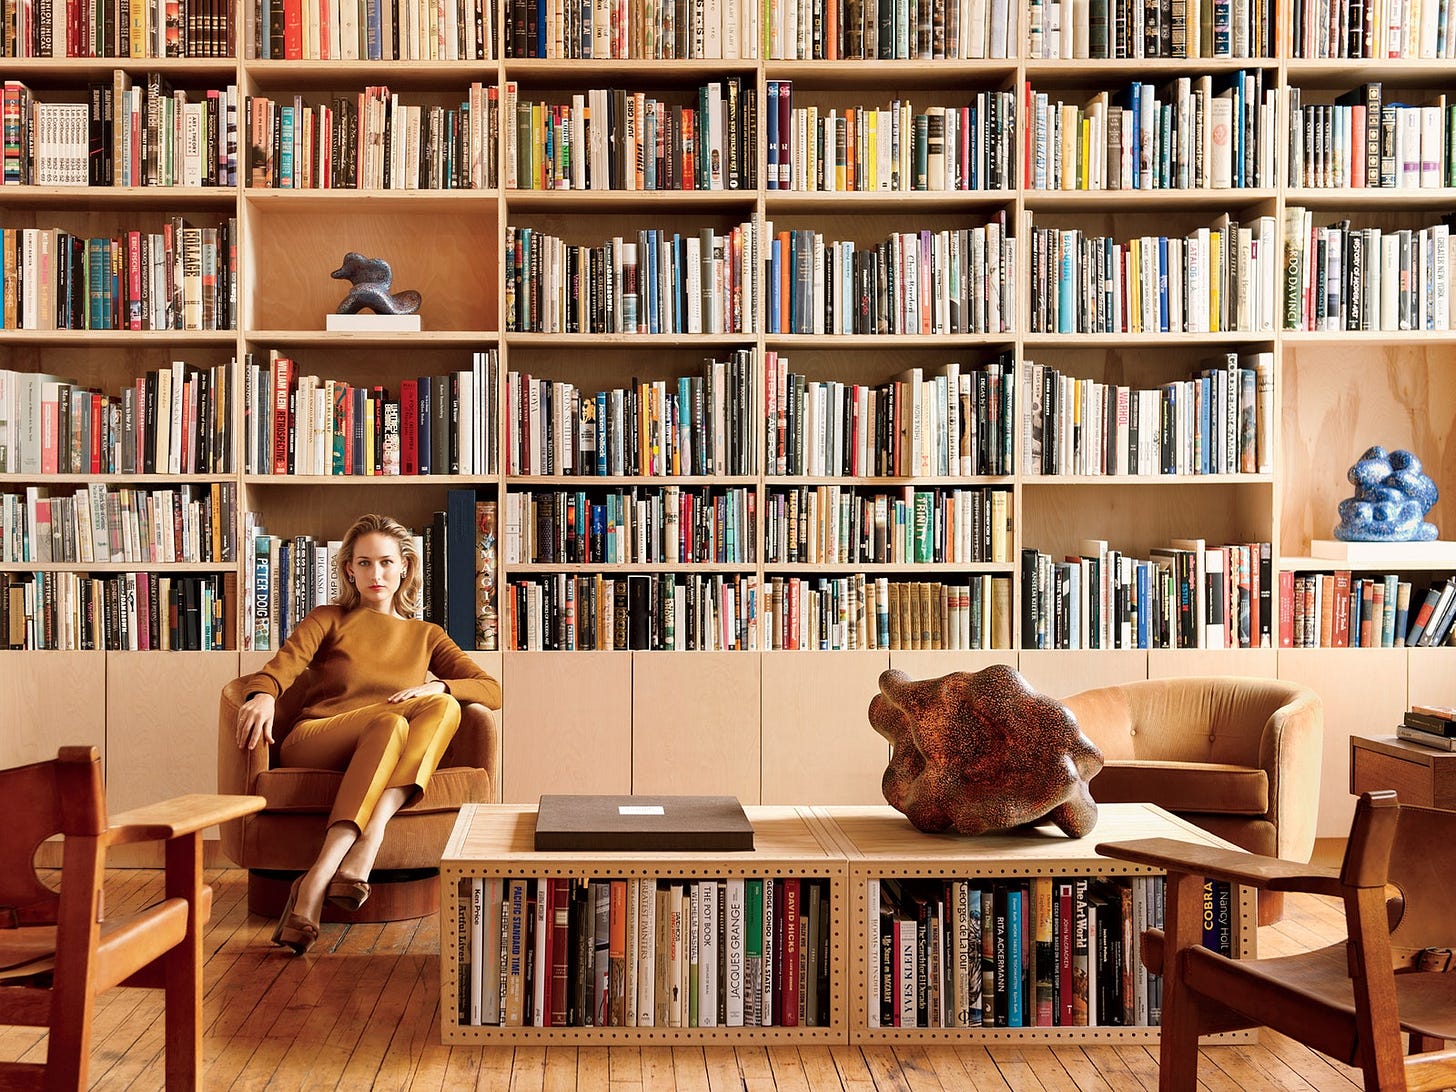 Homes: Interior Design, Décor, DIY, and More | Vogue